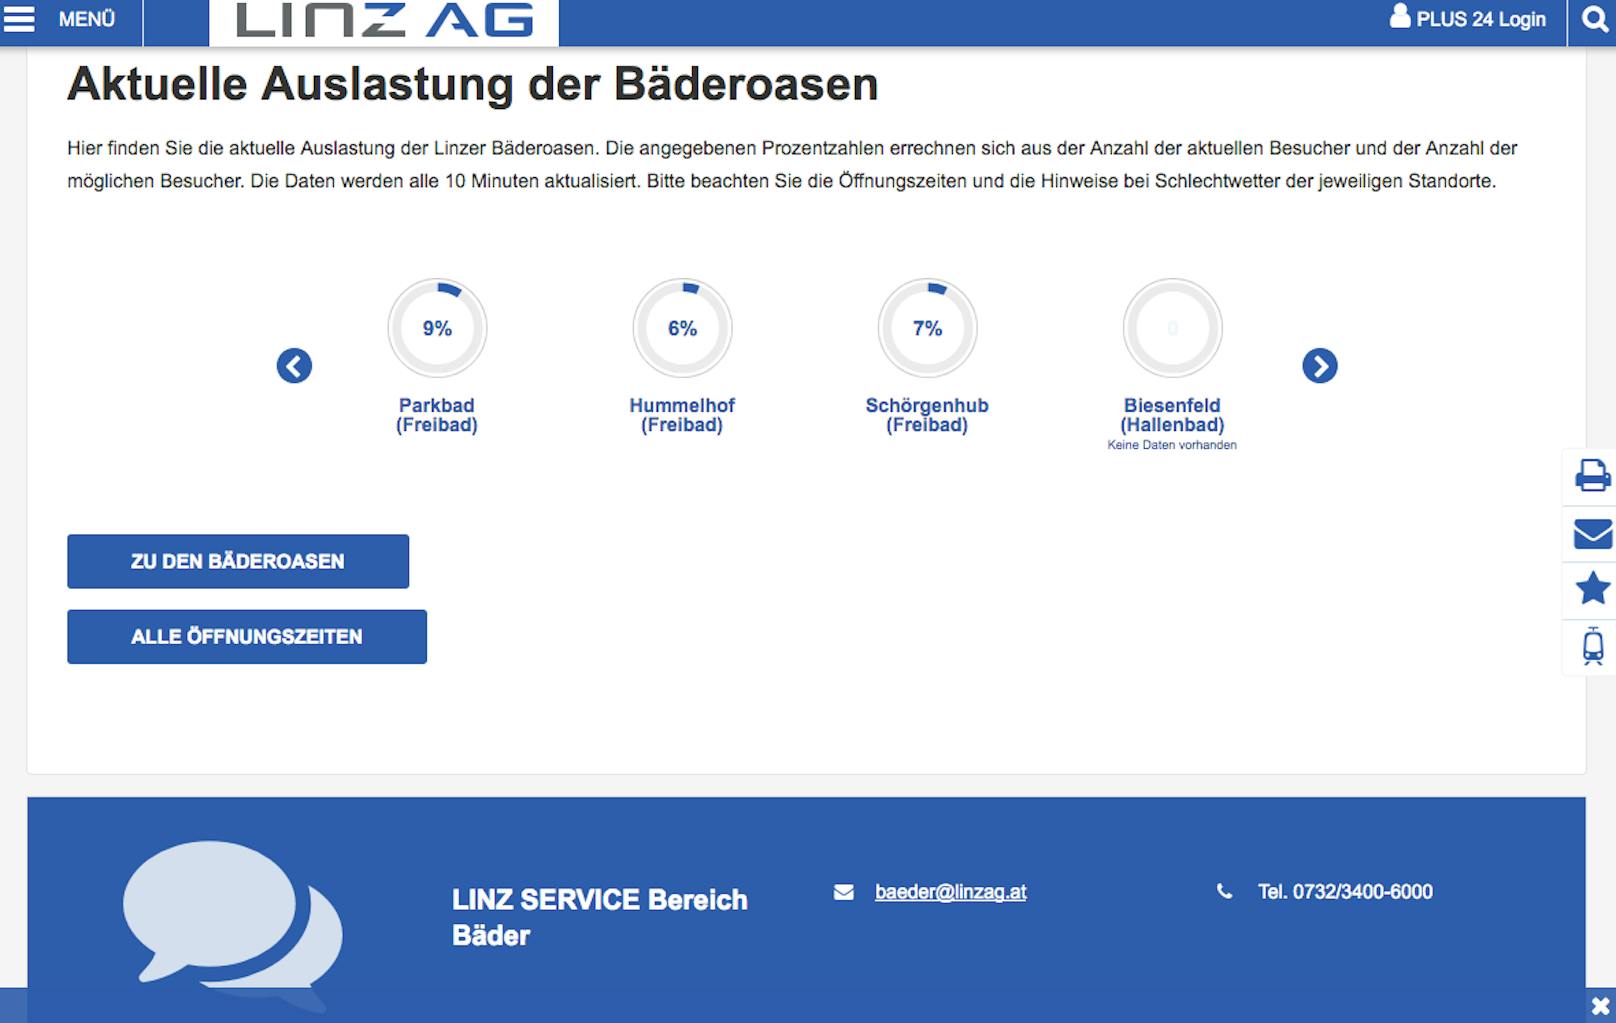 Auf der Homepage der Linz AG ist die Auslastung der Linzer Bäder in Echtzeit (alle 10 Minuten) nachzulesen.